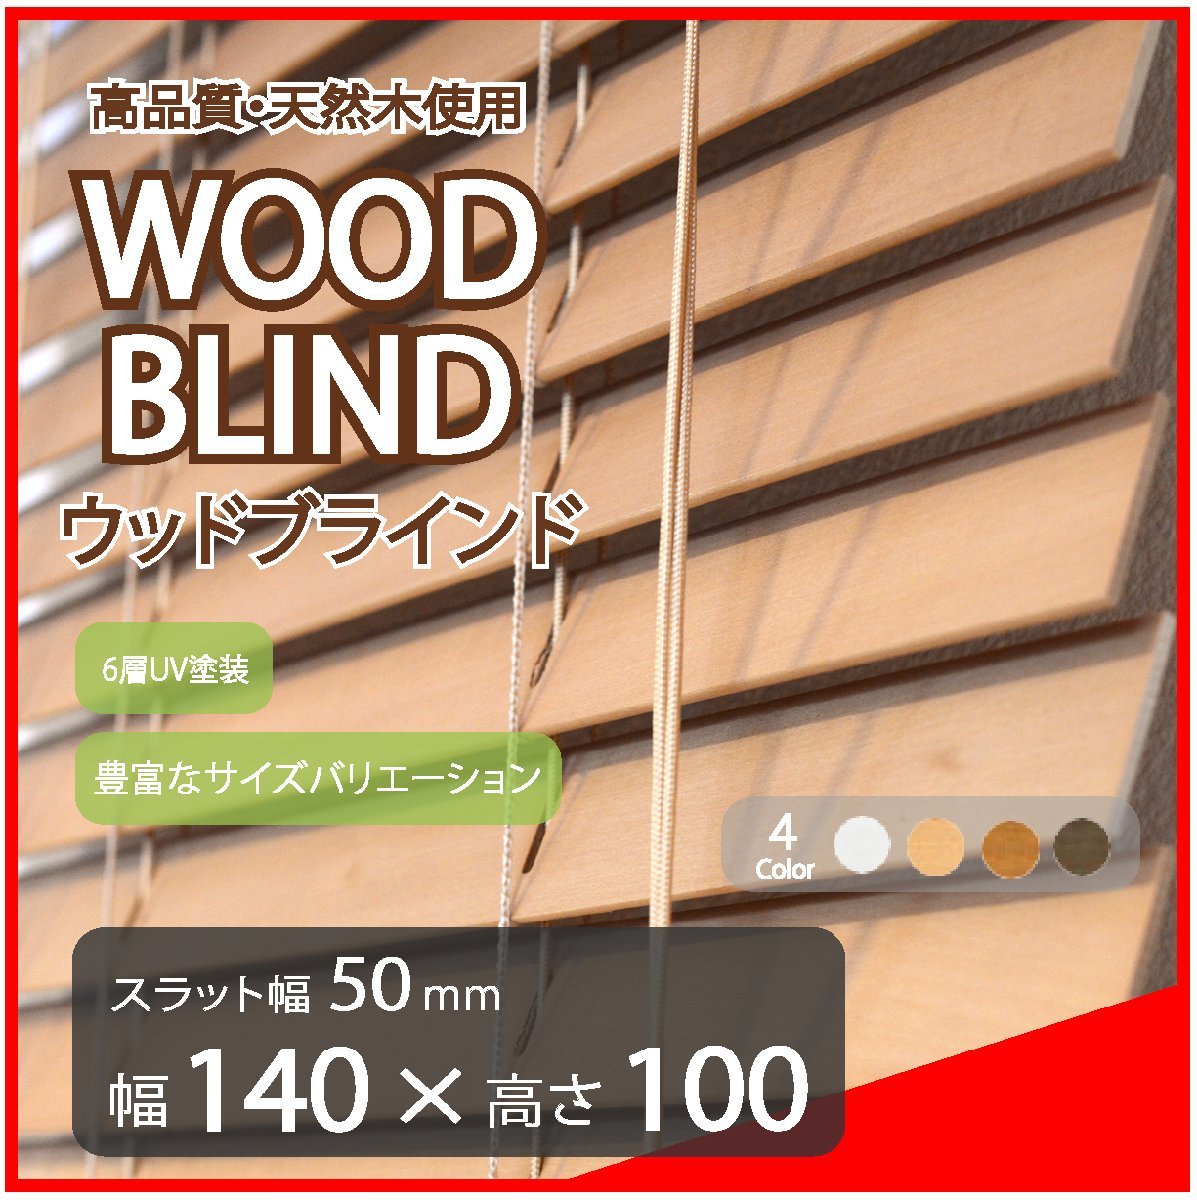 高品質 ウッドブラインド 木製 ブラインド 既成サイズ スラット(羽根)幅50mm 幅140cm×高さ100cm ライトブラウン